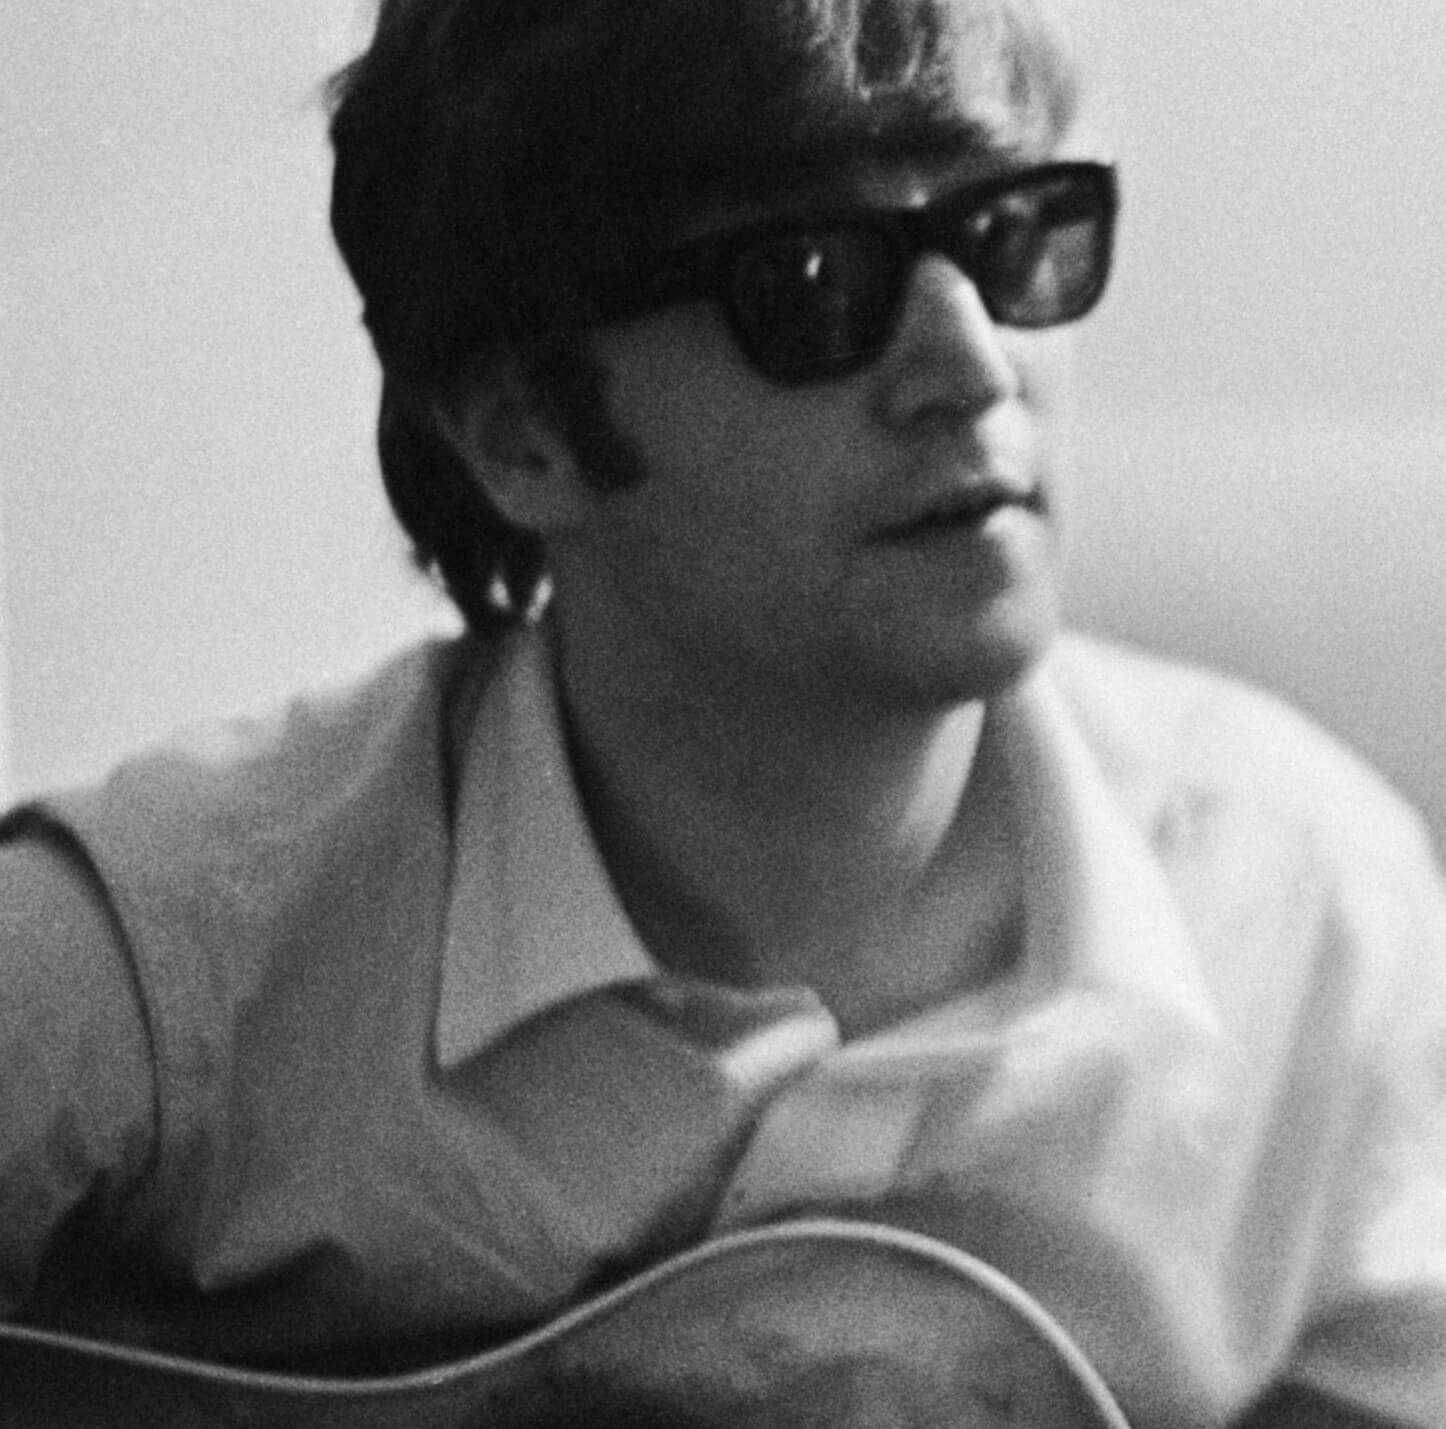 The Beatles' John Lennon in black-and-white